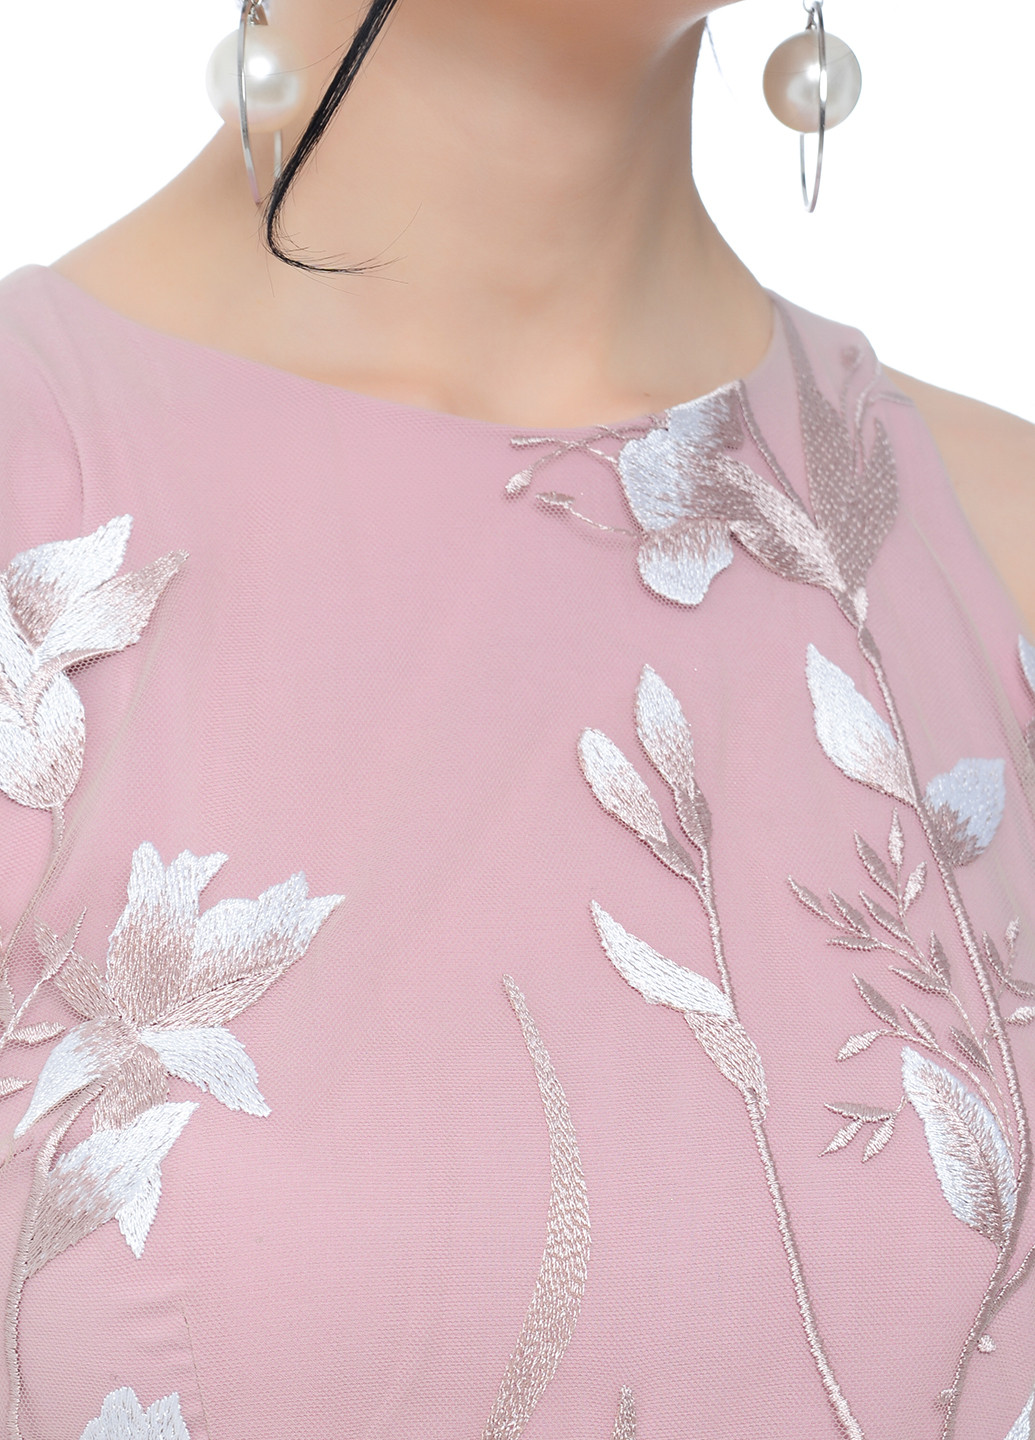 Бледно-розовое коктейльное платье миди Iren Klairie фактурное